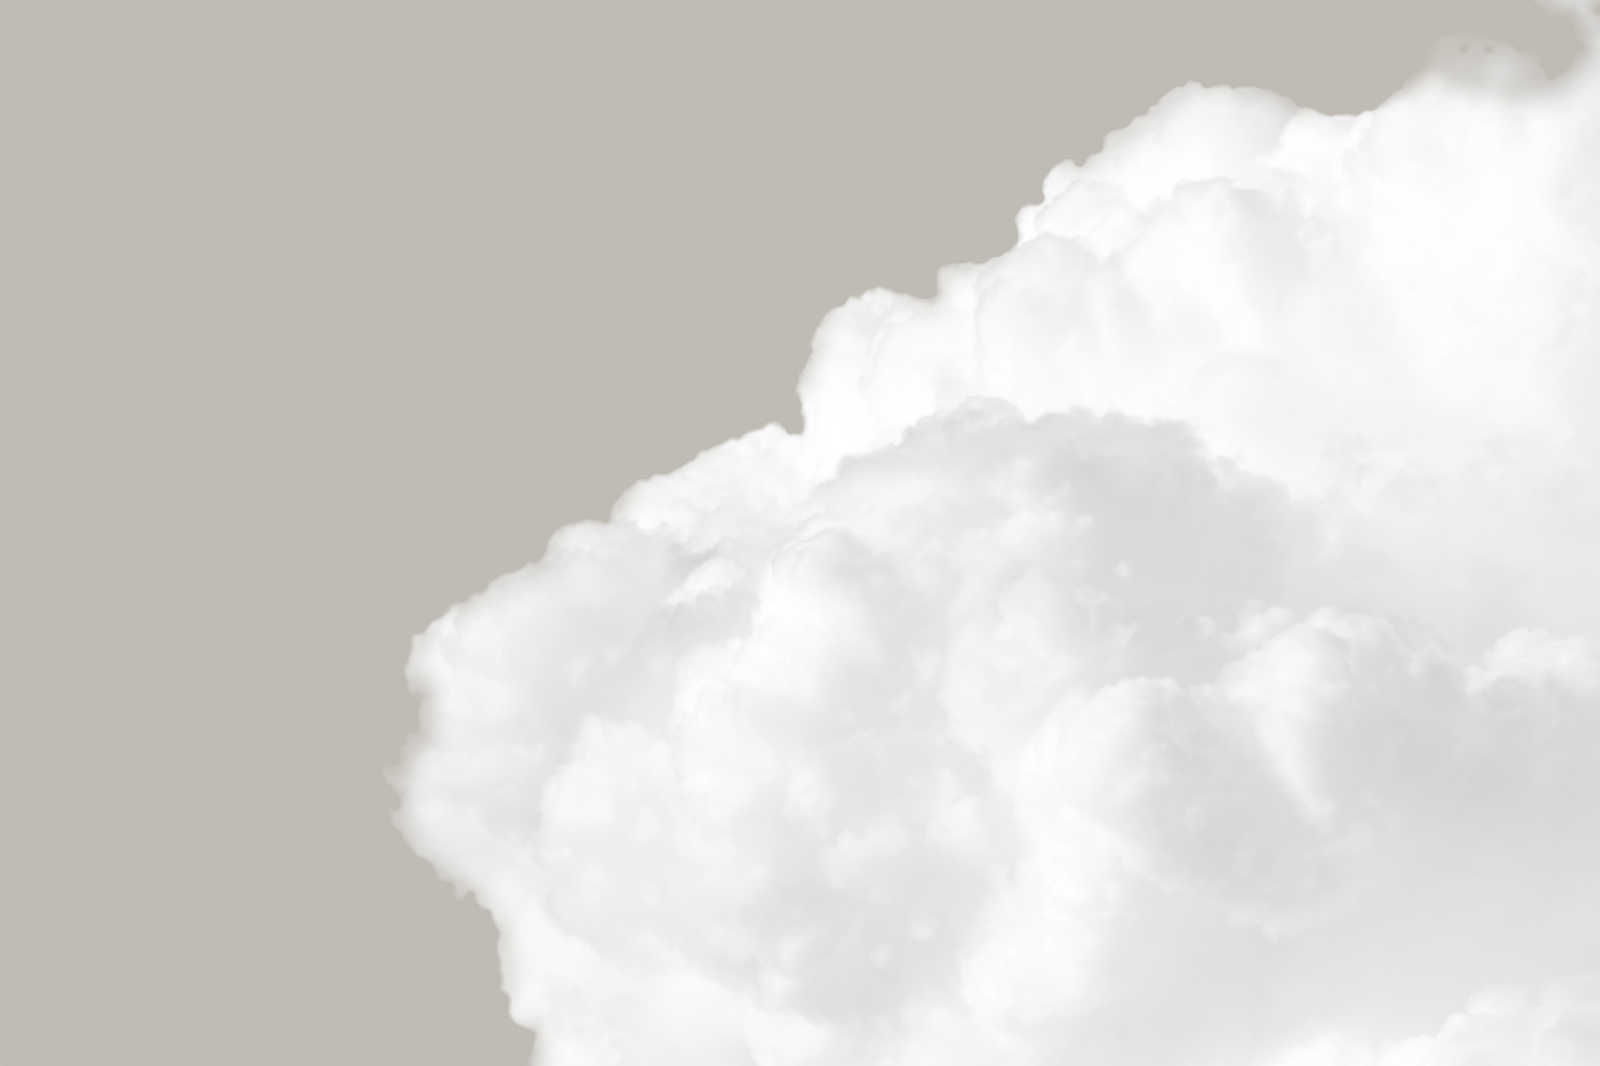             Leinwandbild mit weißen Wolken am grauen Himmel – 0,90 m x 0,60 m
        